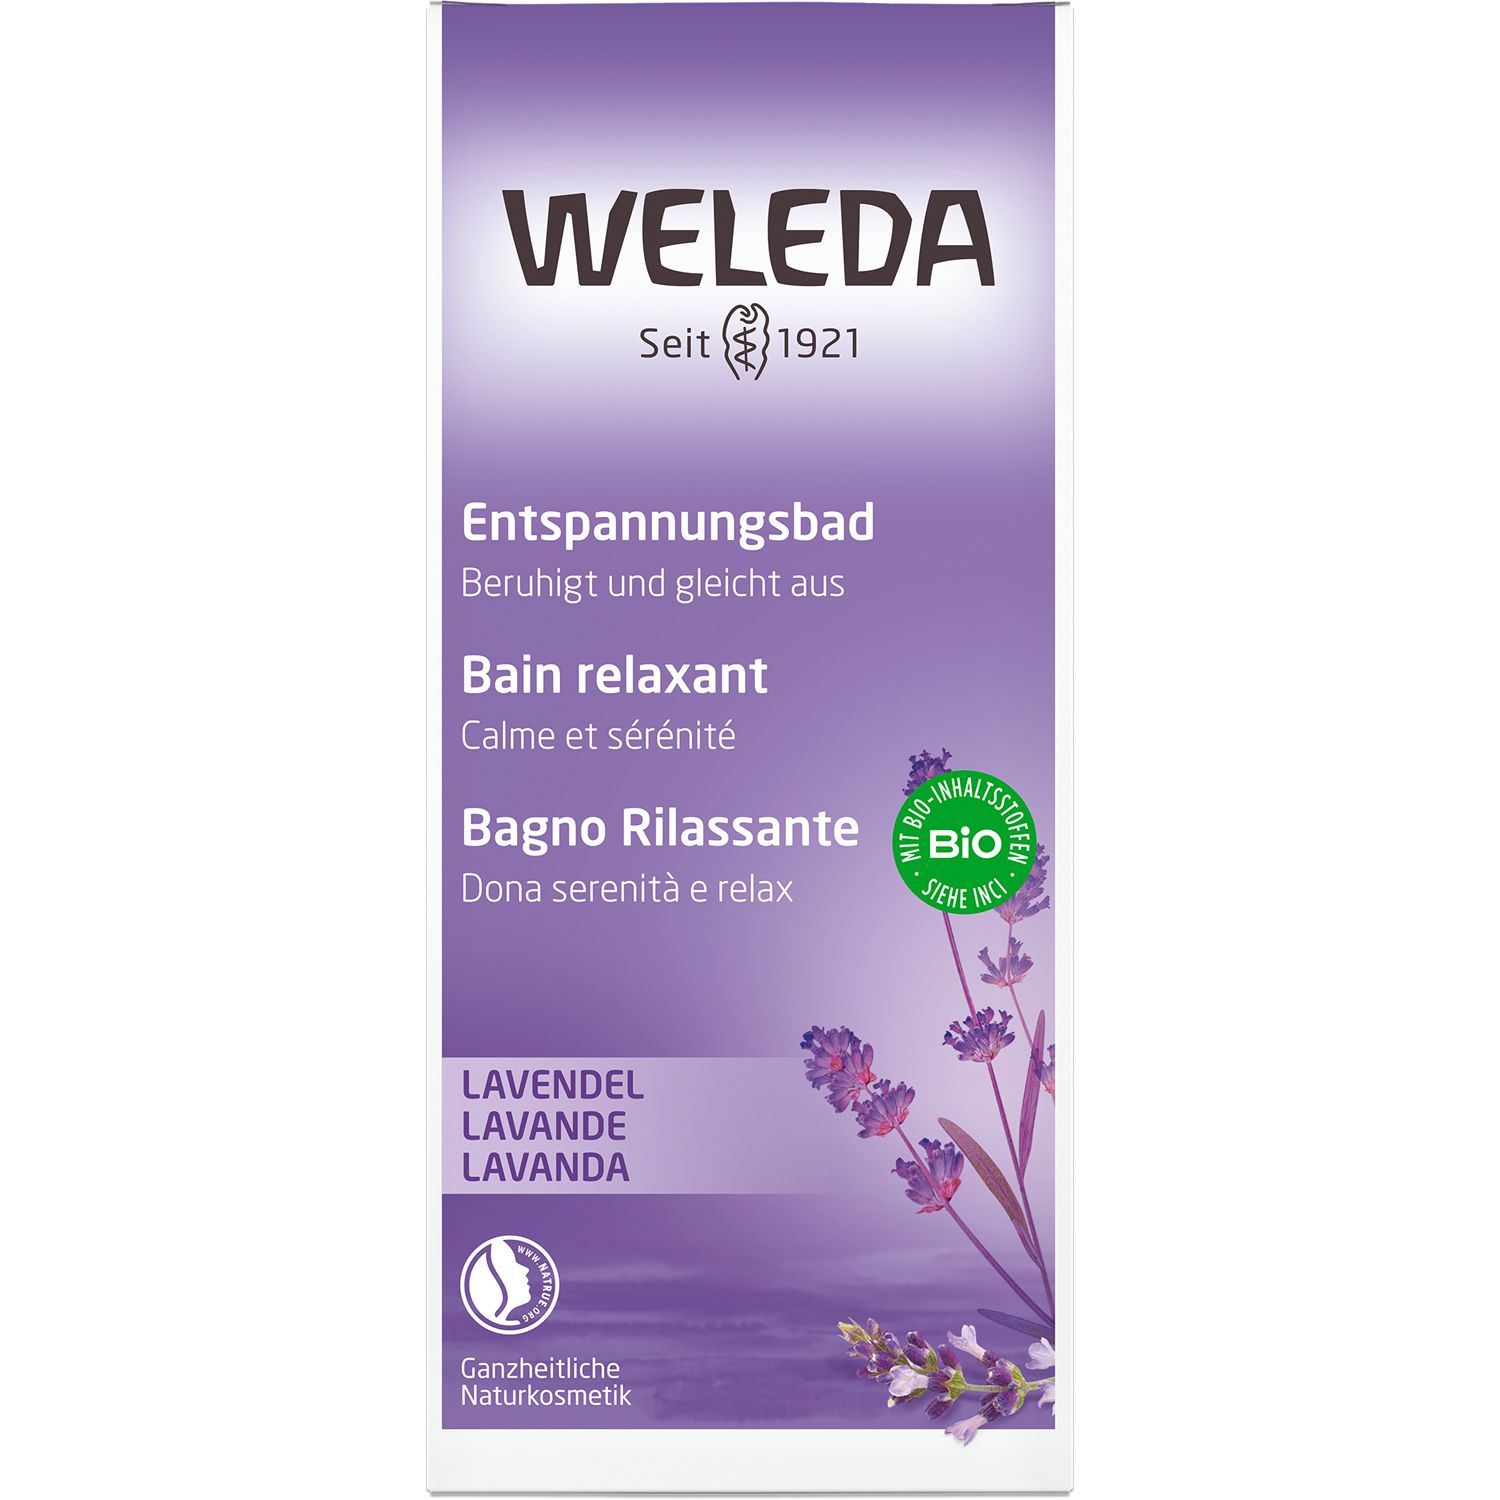 Weleda Lavendel Entspannungsbad - ätherisches Öl beruhigt, entspannt & fördert einen guten Schlaf